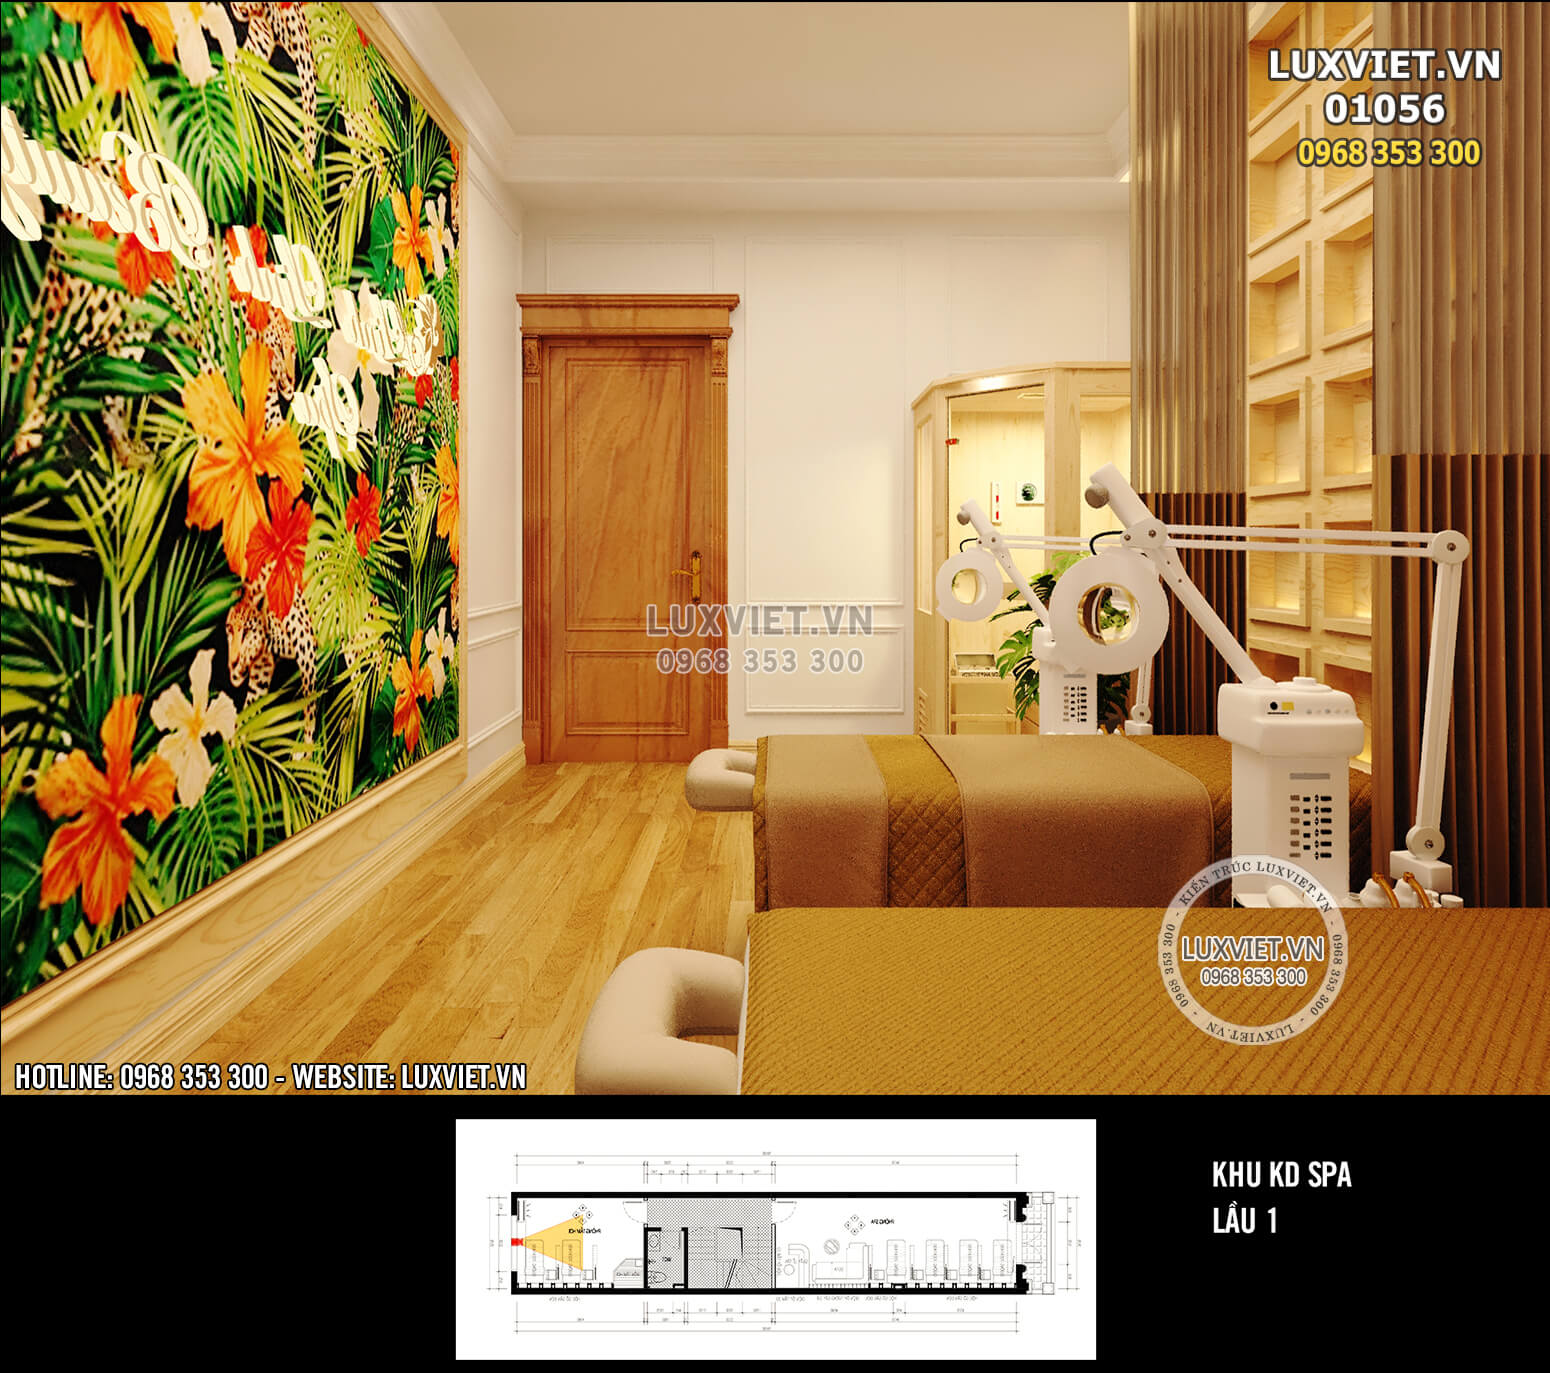 Hình ảnh: Không gian nội thất được thiết kế hợp lý và khoa học - LV 01056